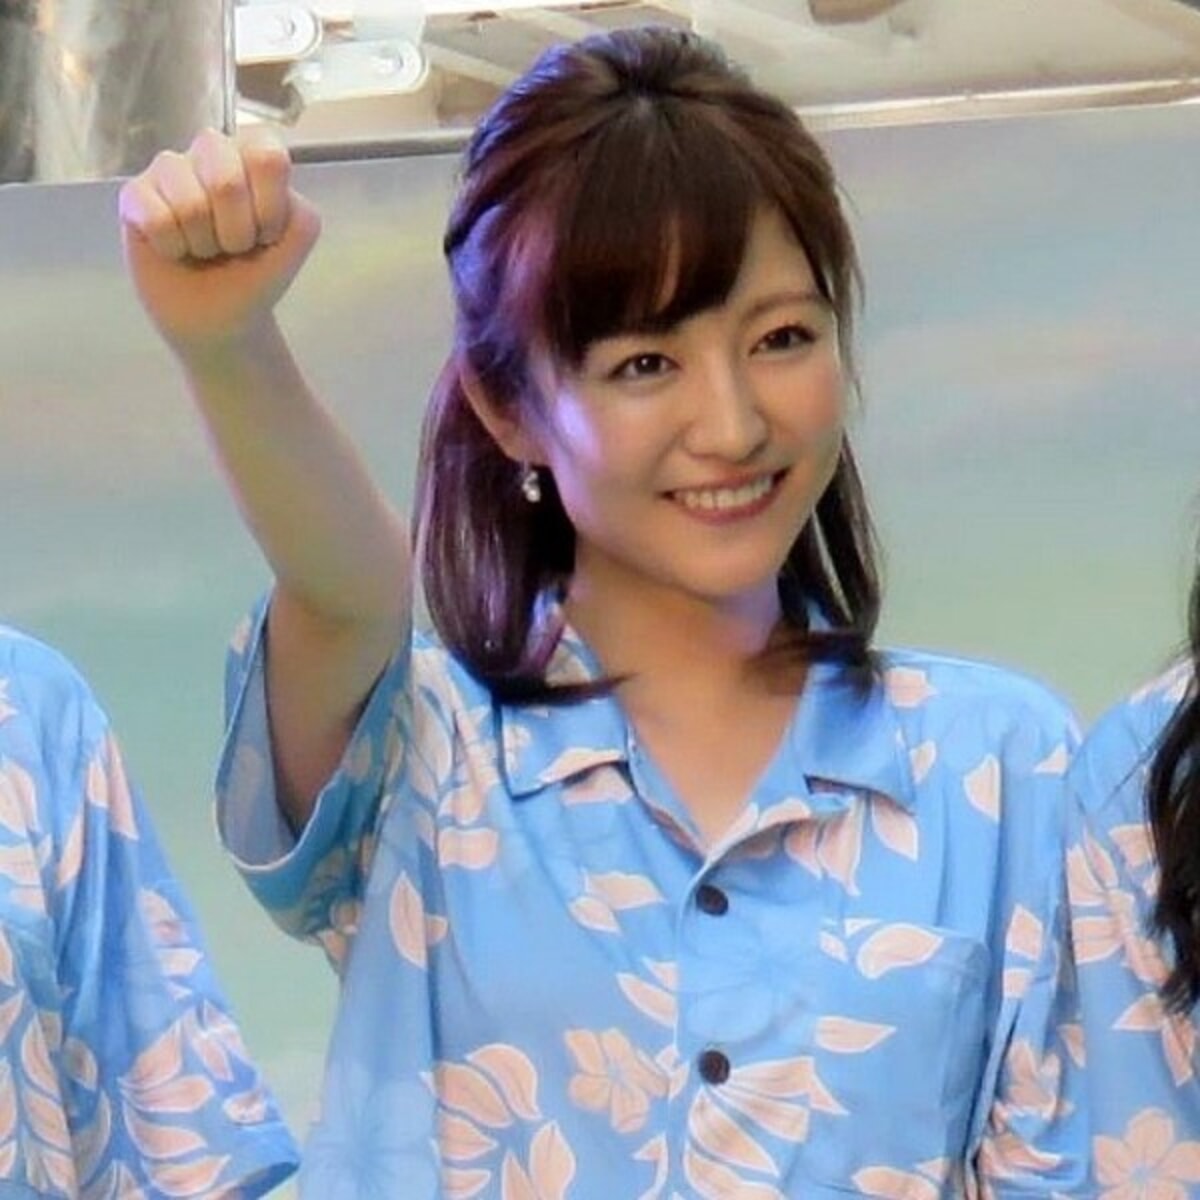 日テレ滝菜月アナがオシャレ対決で最下位も ジャニーズメンバーには評価された Asageimuse